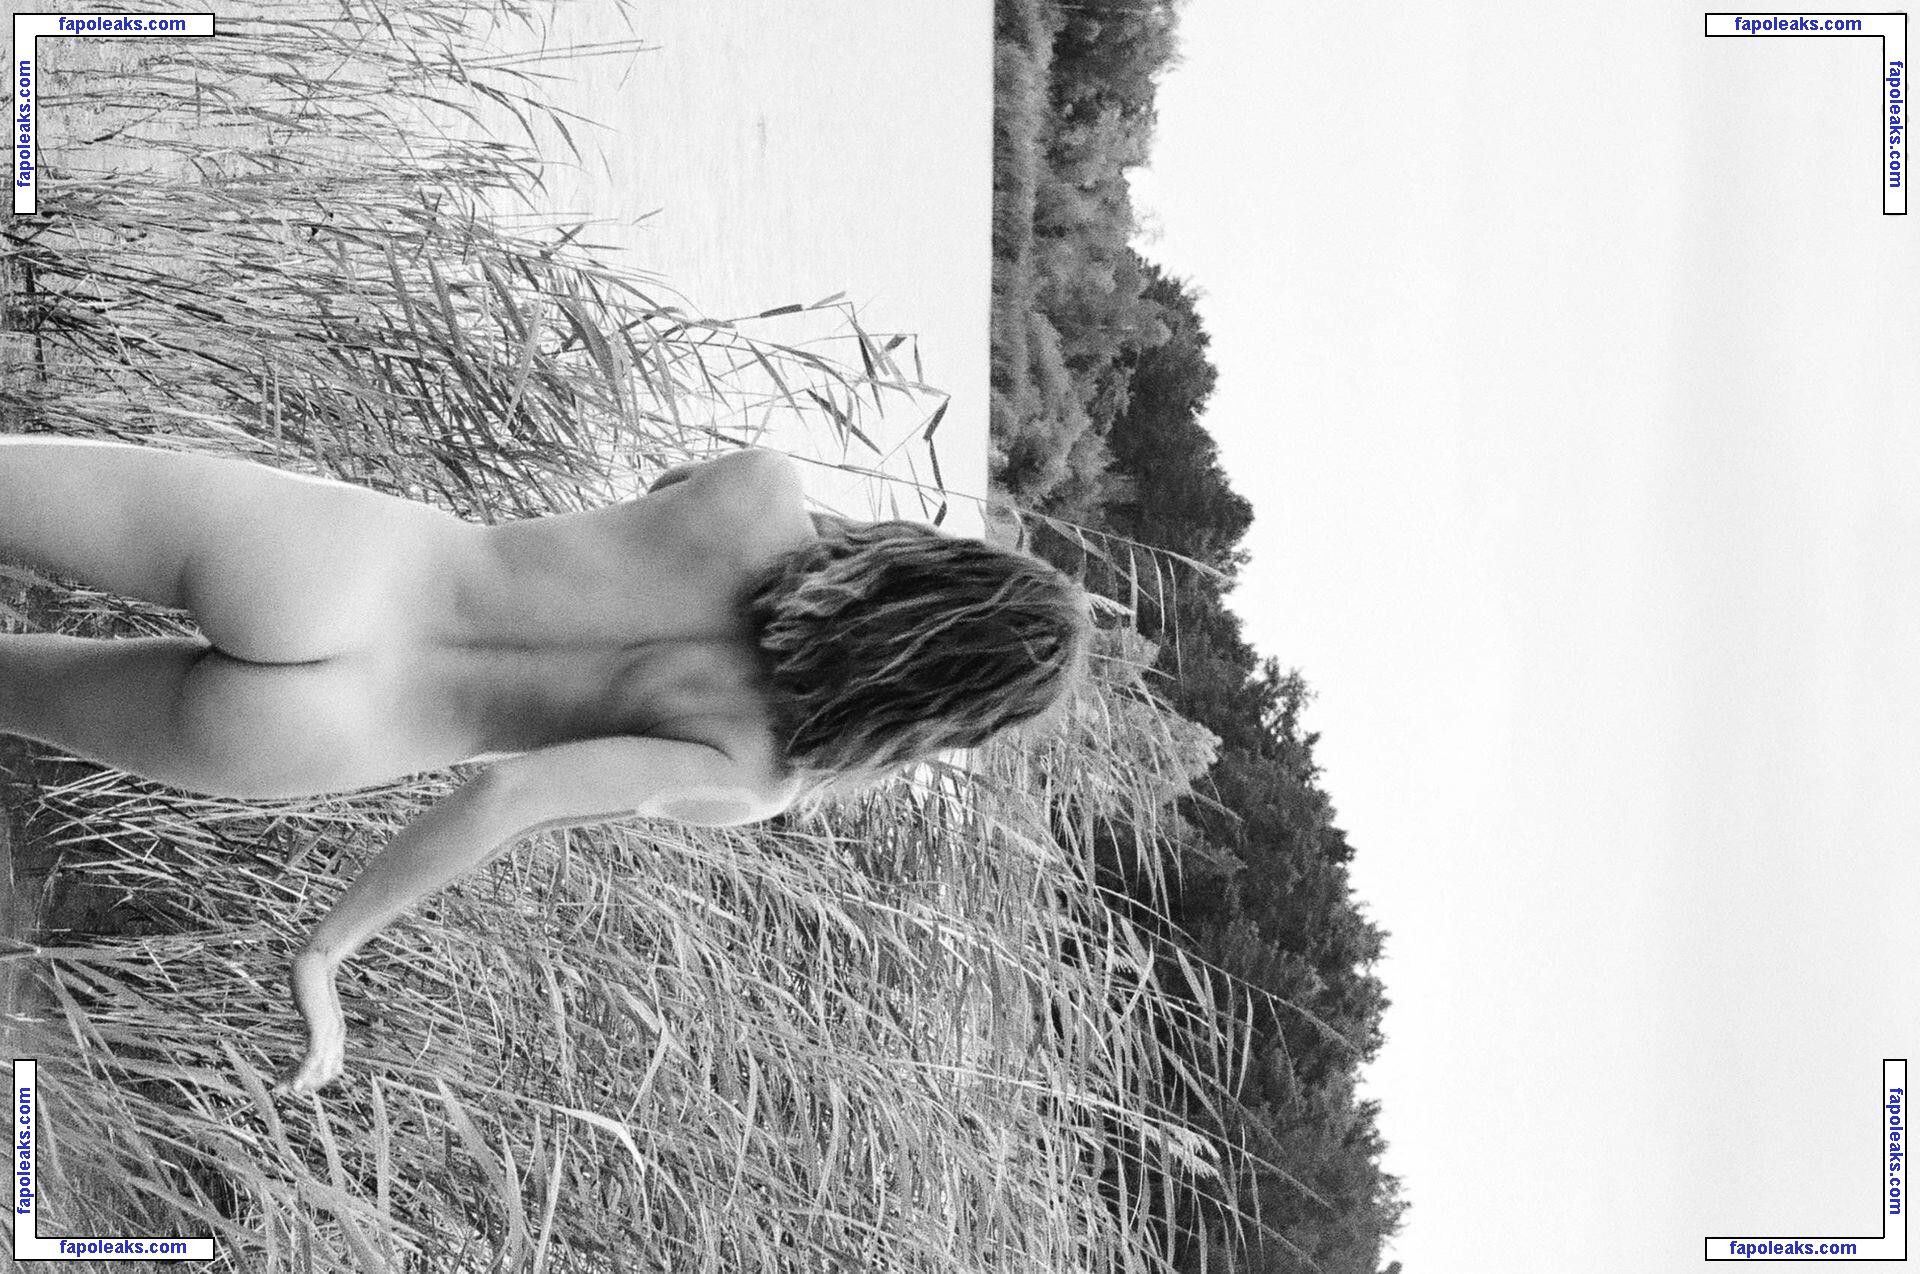 Mimi Elashiry / mimielashiry nude photo #0229 from OnlyFans